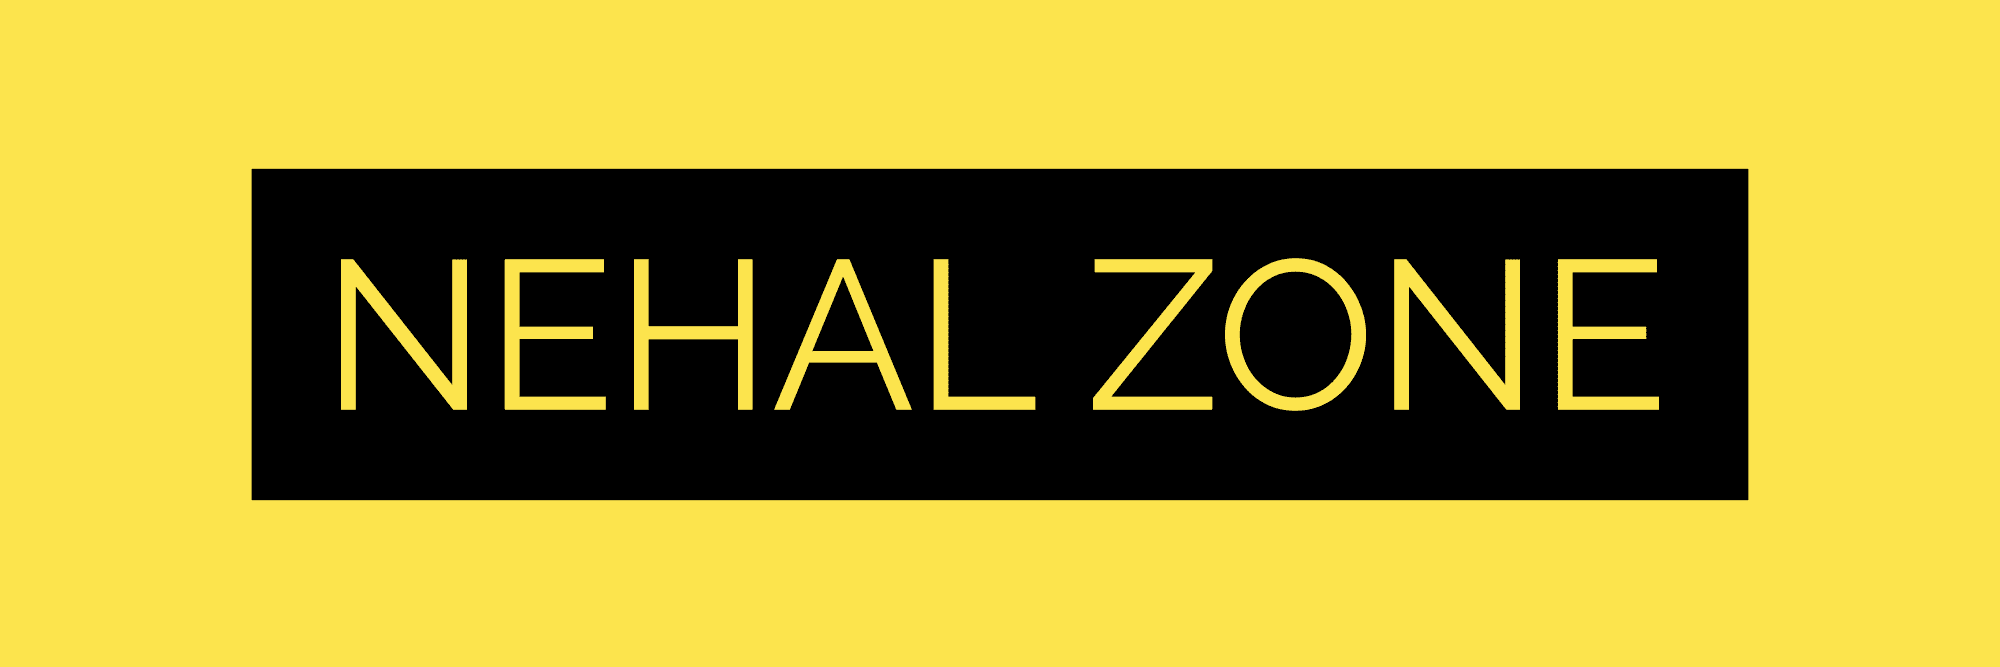 Nehal Zone